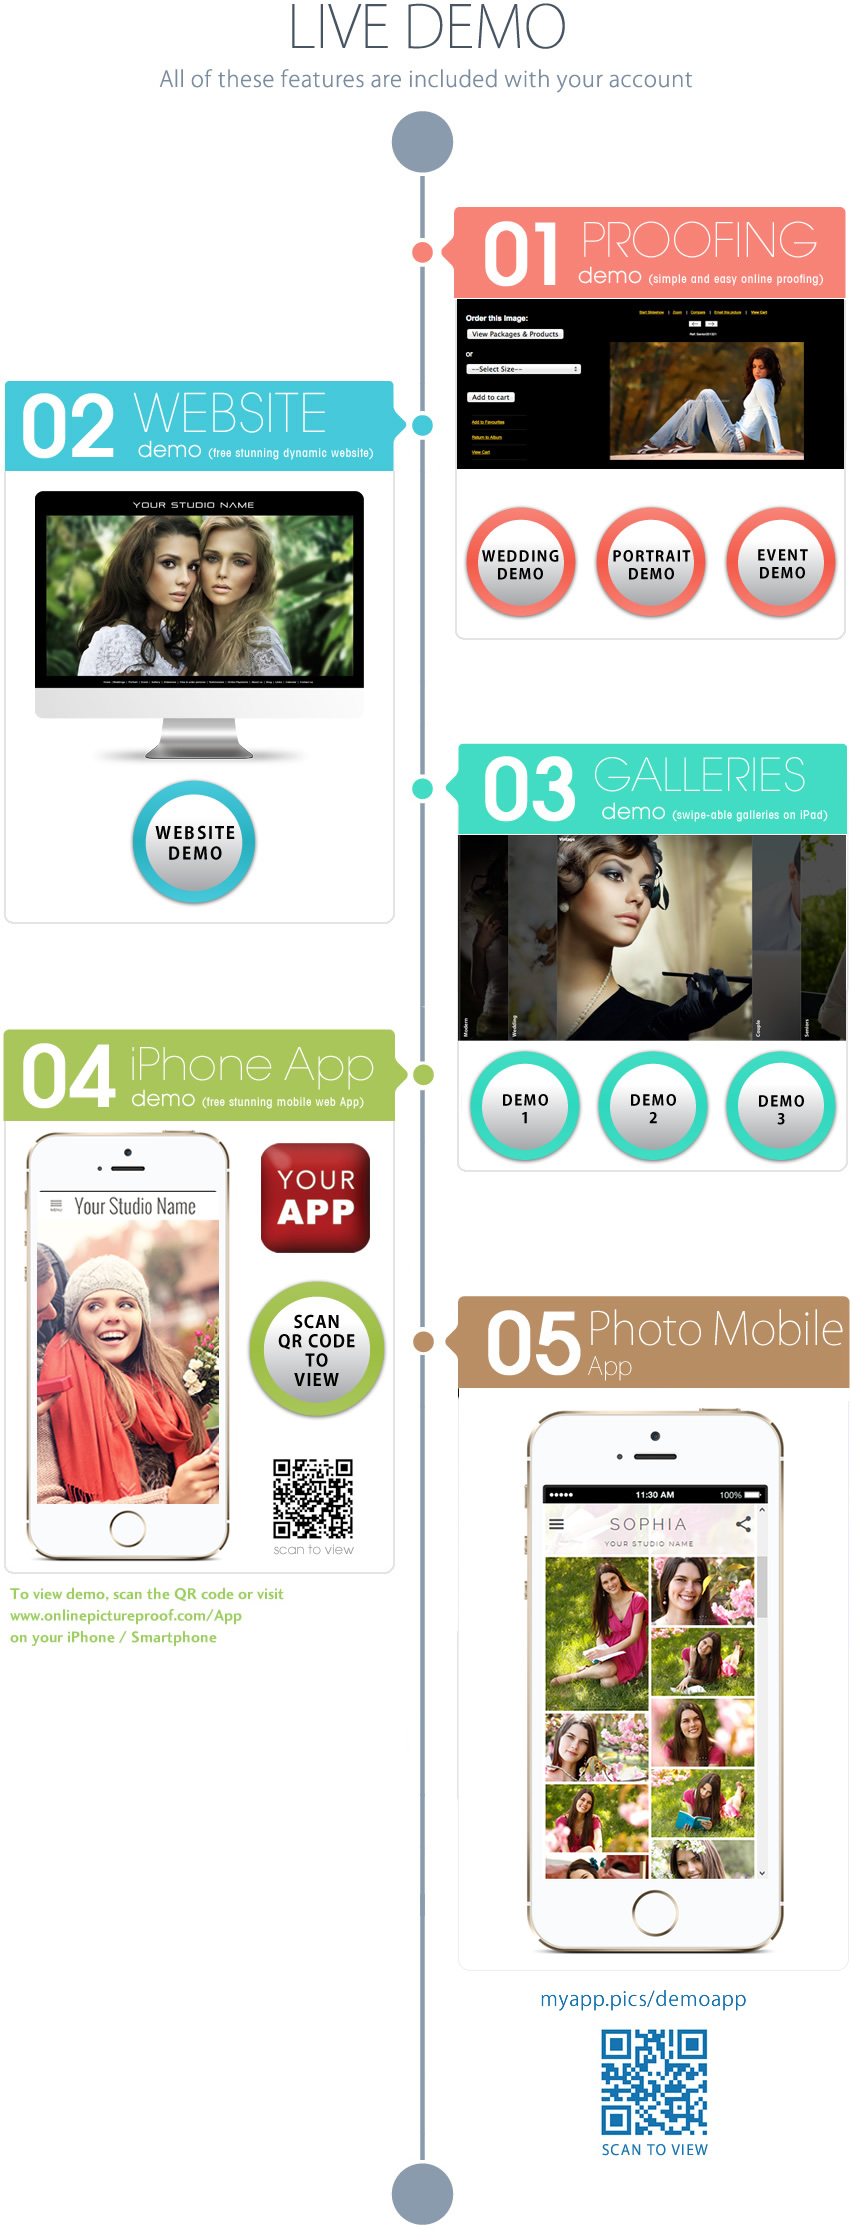 online-picture-proof-demo-website-proofing-app-slideshow-facebook-app-features